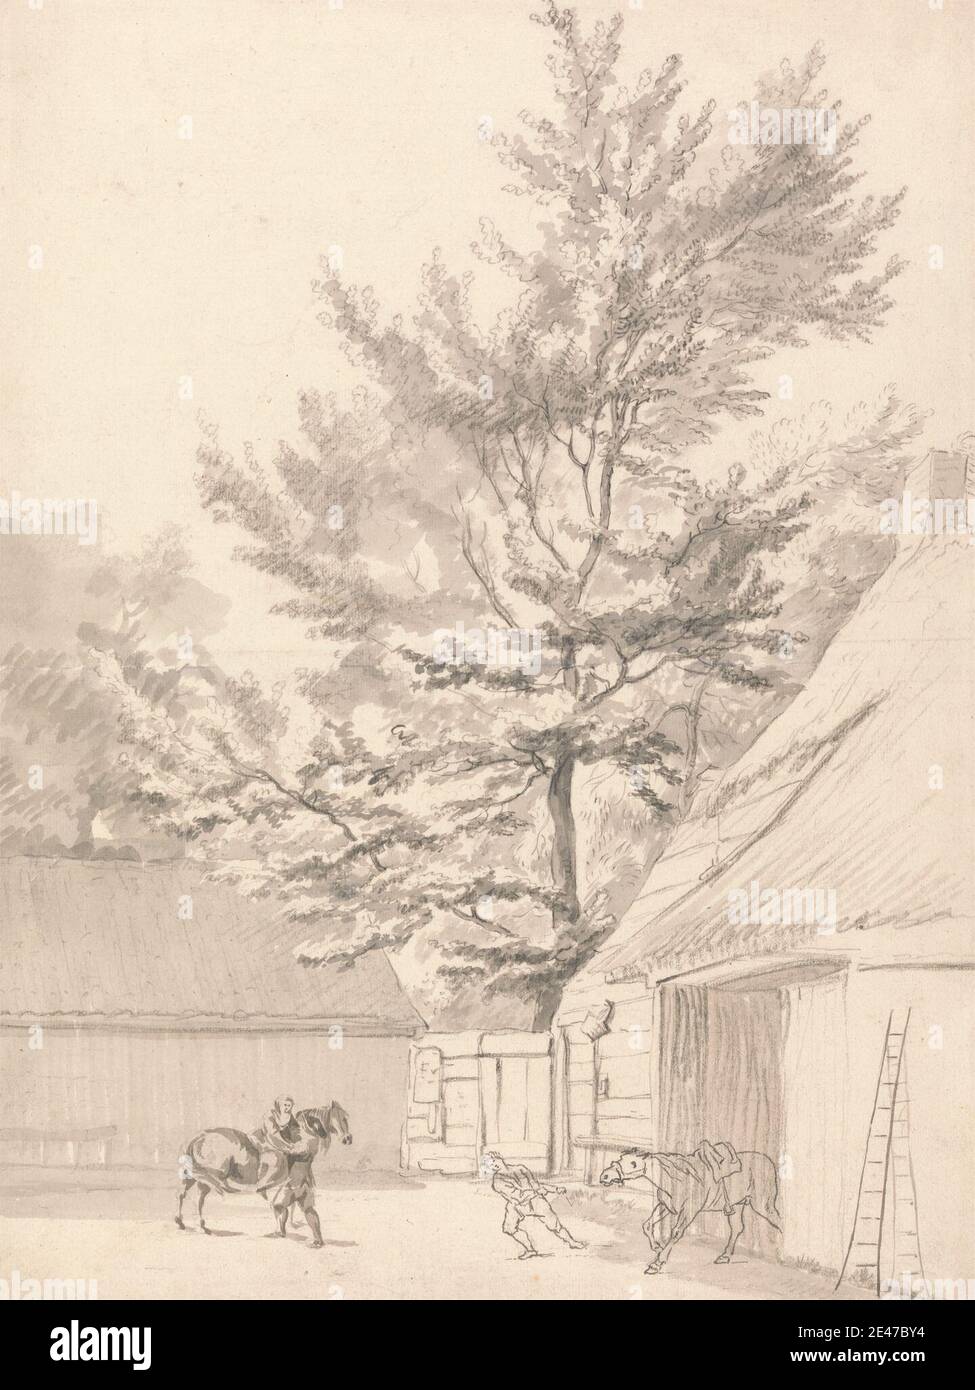 Zugeschrieben Peter Tillemans, 1684–1734, Flämisch, in Großbritannien tätig (ab 1708), EIN Stallhof mit hohem Baum, undatiert. Graphit- und Grauwäsche mit Stift und schwarzer Tinte auf Medium, leicht strukturiert, cremefarbenem Papier. Public Domain Stockfoto